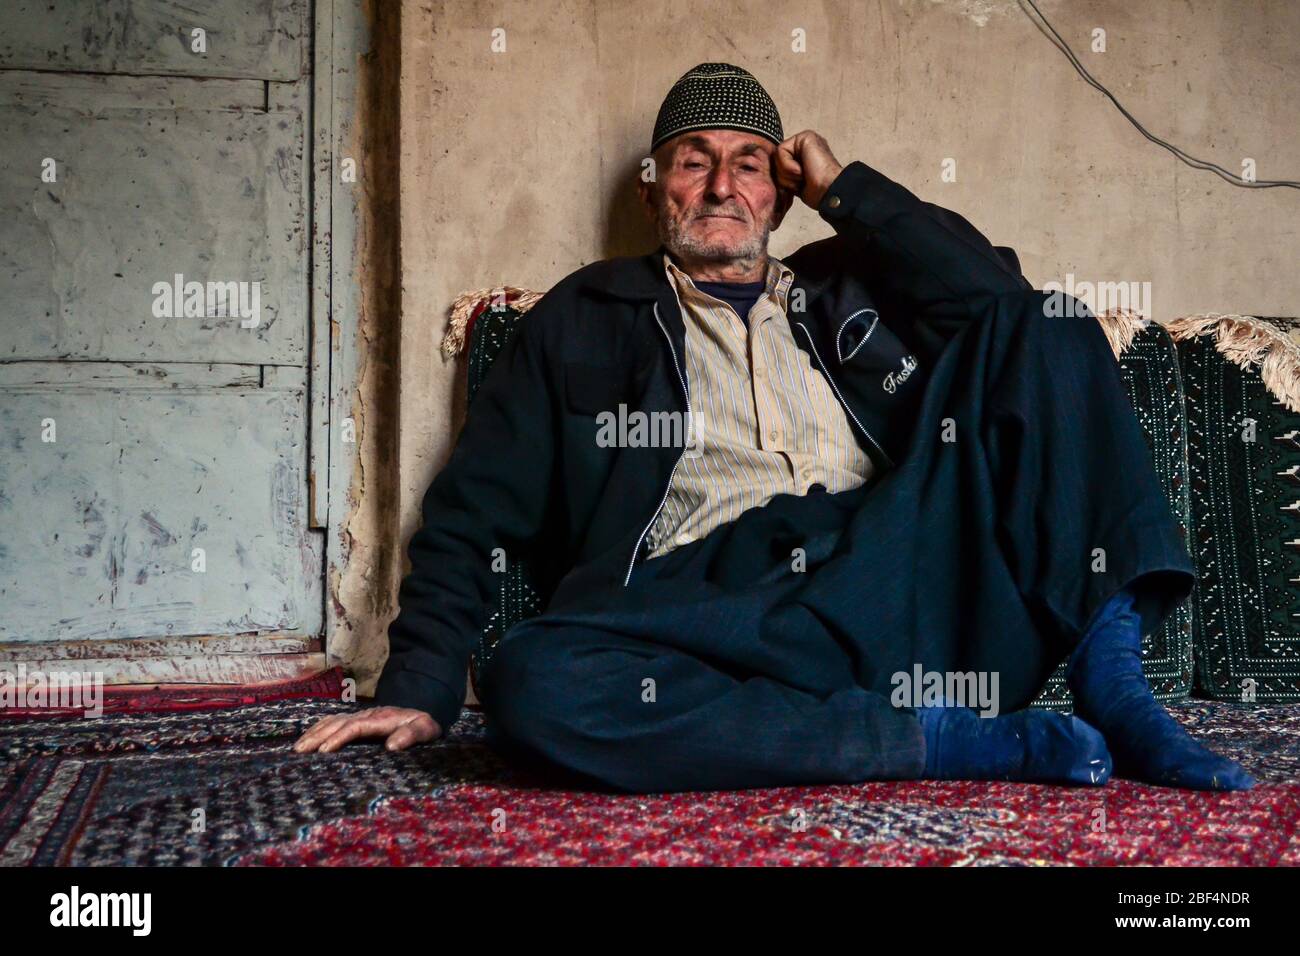 Palangan, Kurdistan iranien - 15 novembre 2013: L'ancien musulman iranien Kudish homme assis sur le tapis de sol de sa maison regarde la caméra Banque D'Images